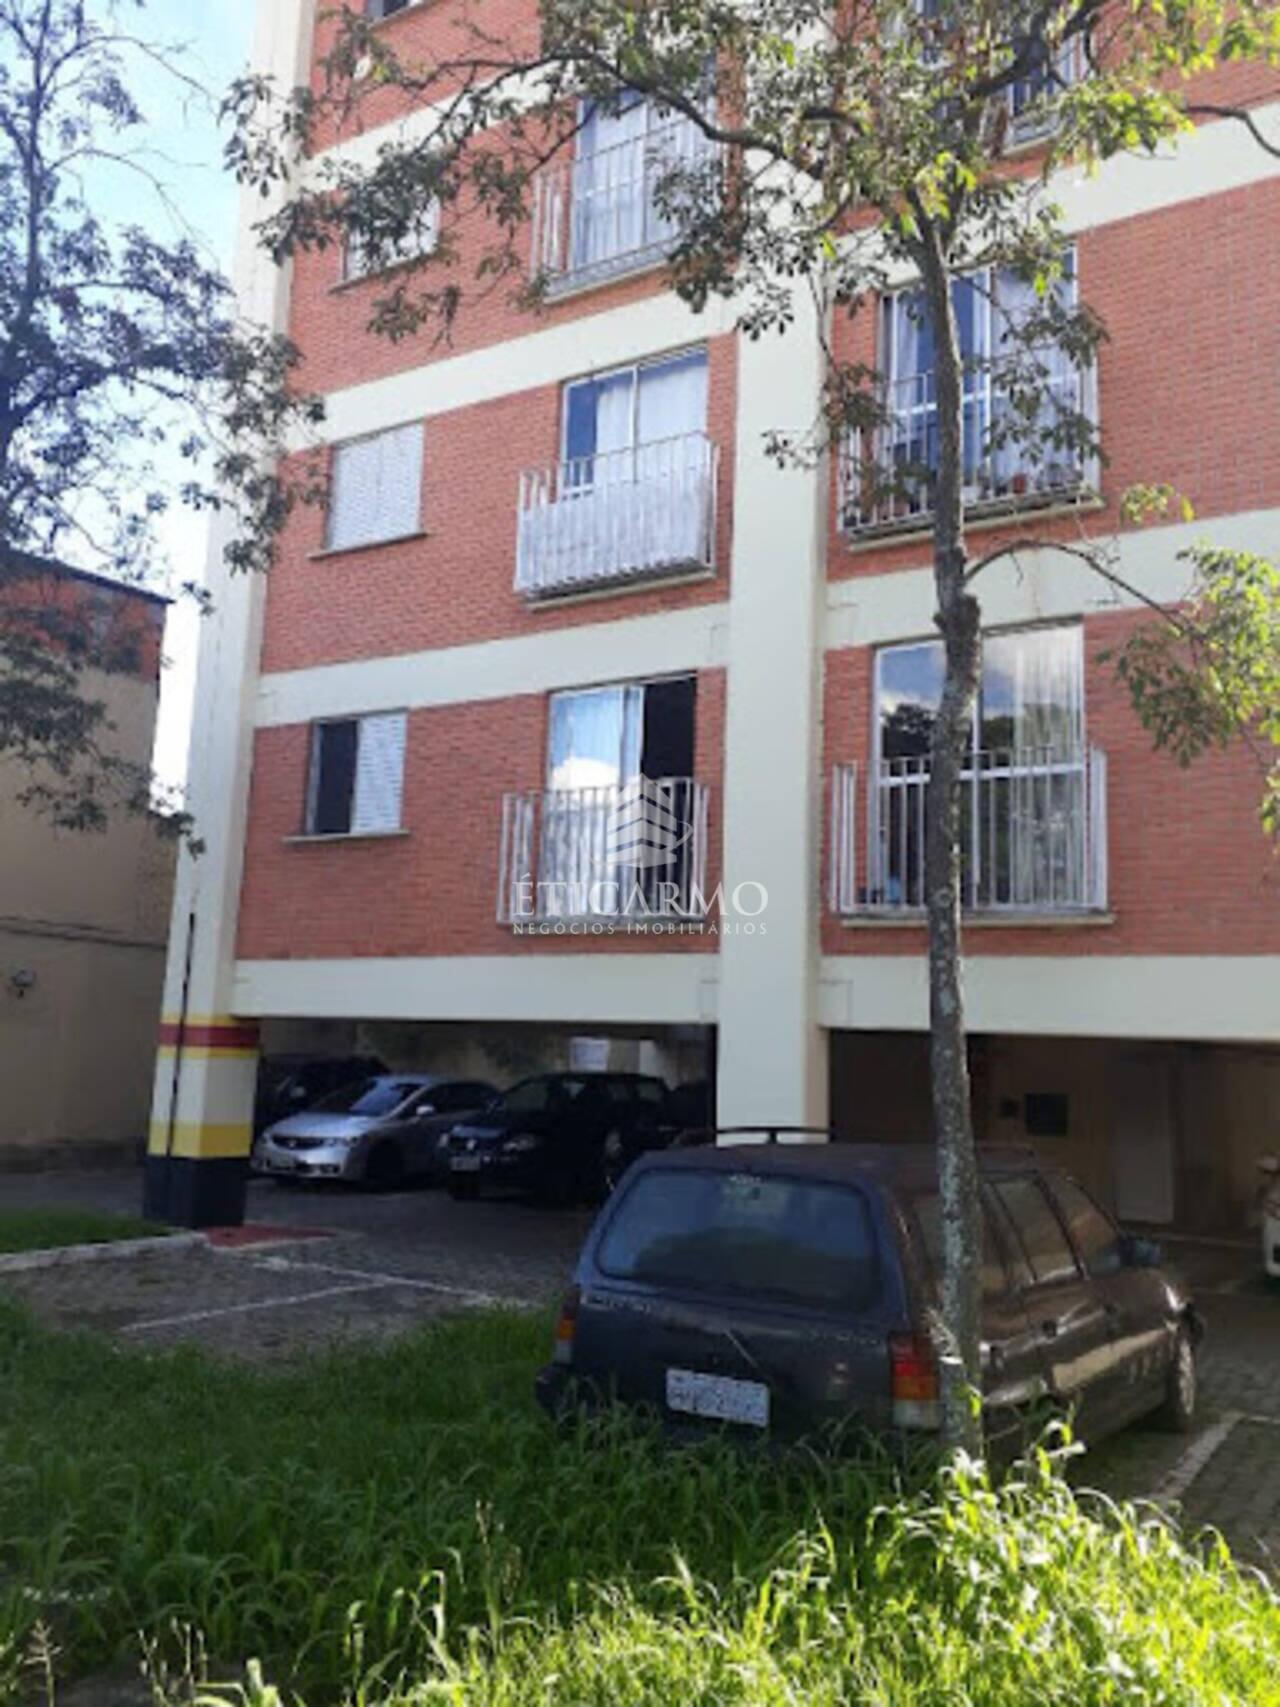 Apartamento Jardim Aricanduva, São Paulo - SP